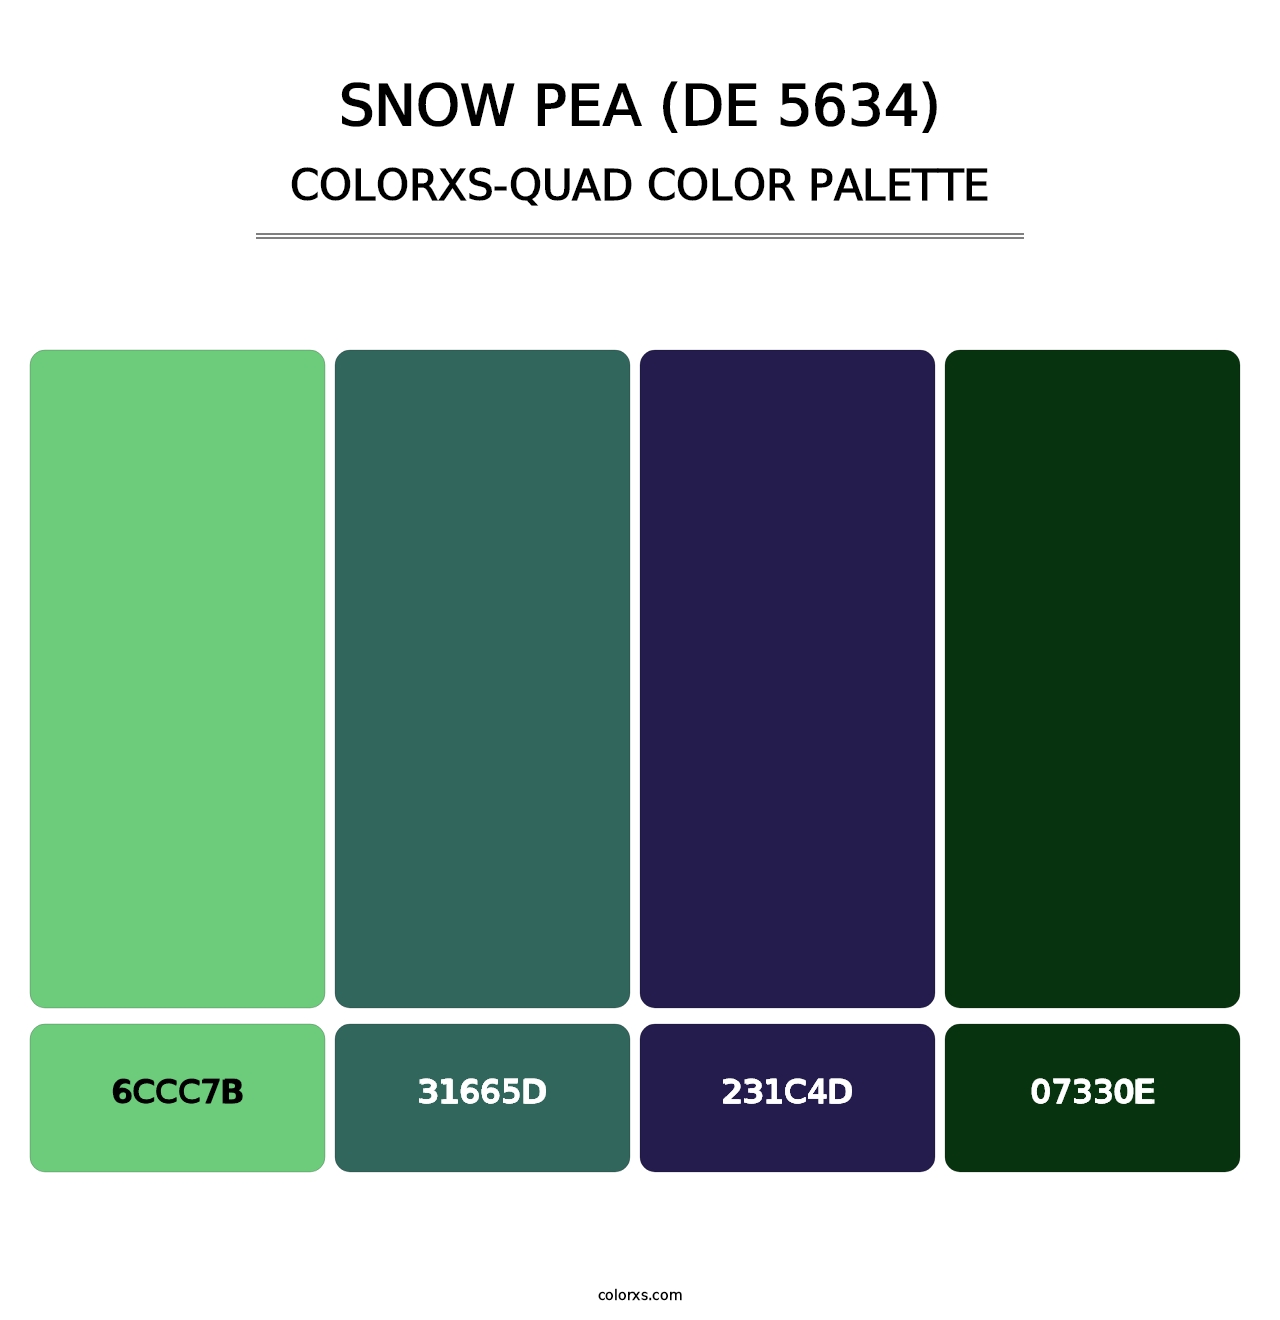 Snow Pea (DE 5634) - Colorxs Quad Palette